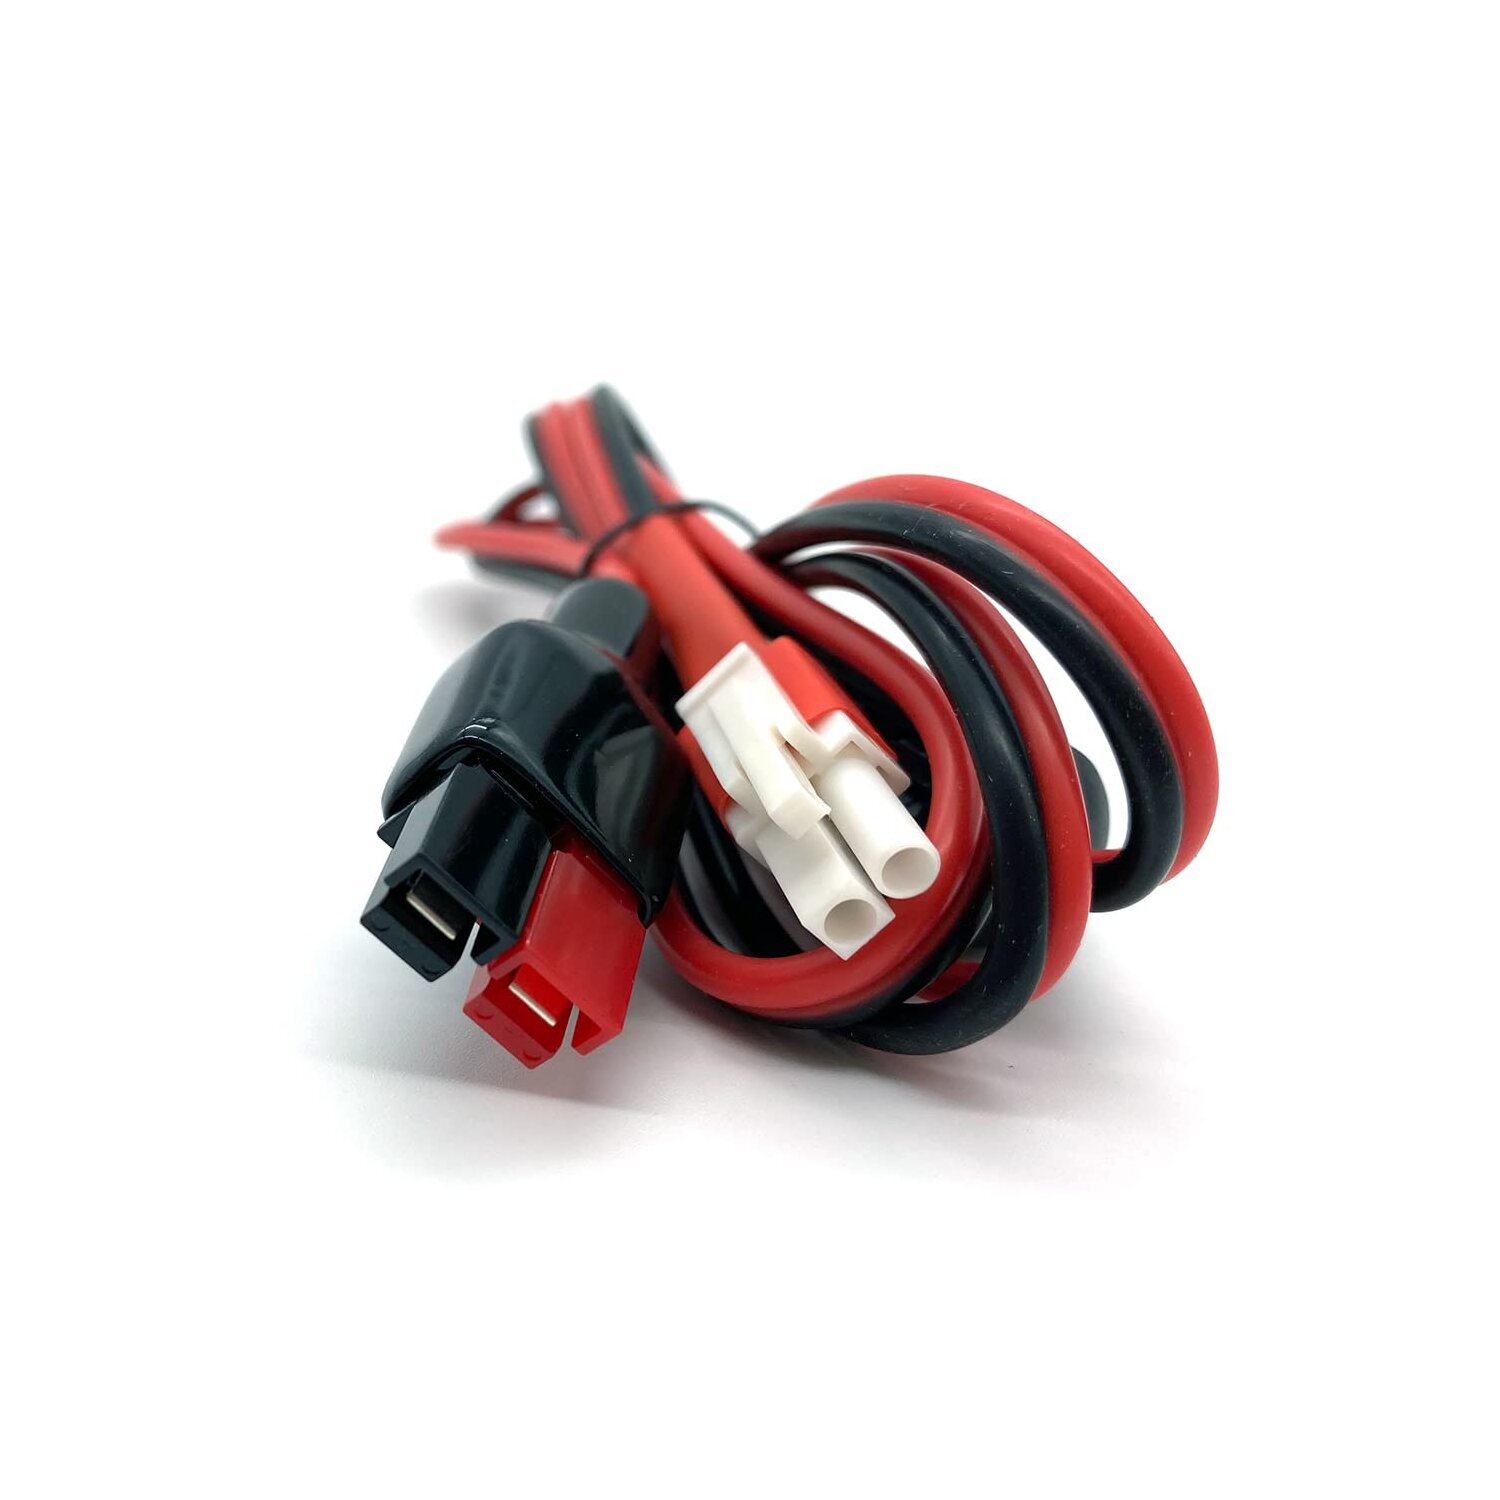 Digirig Powerpole kompatibles Kabel für Xiegu G90